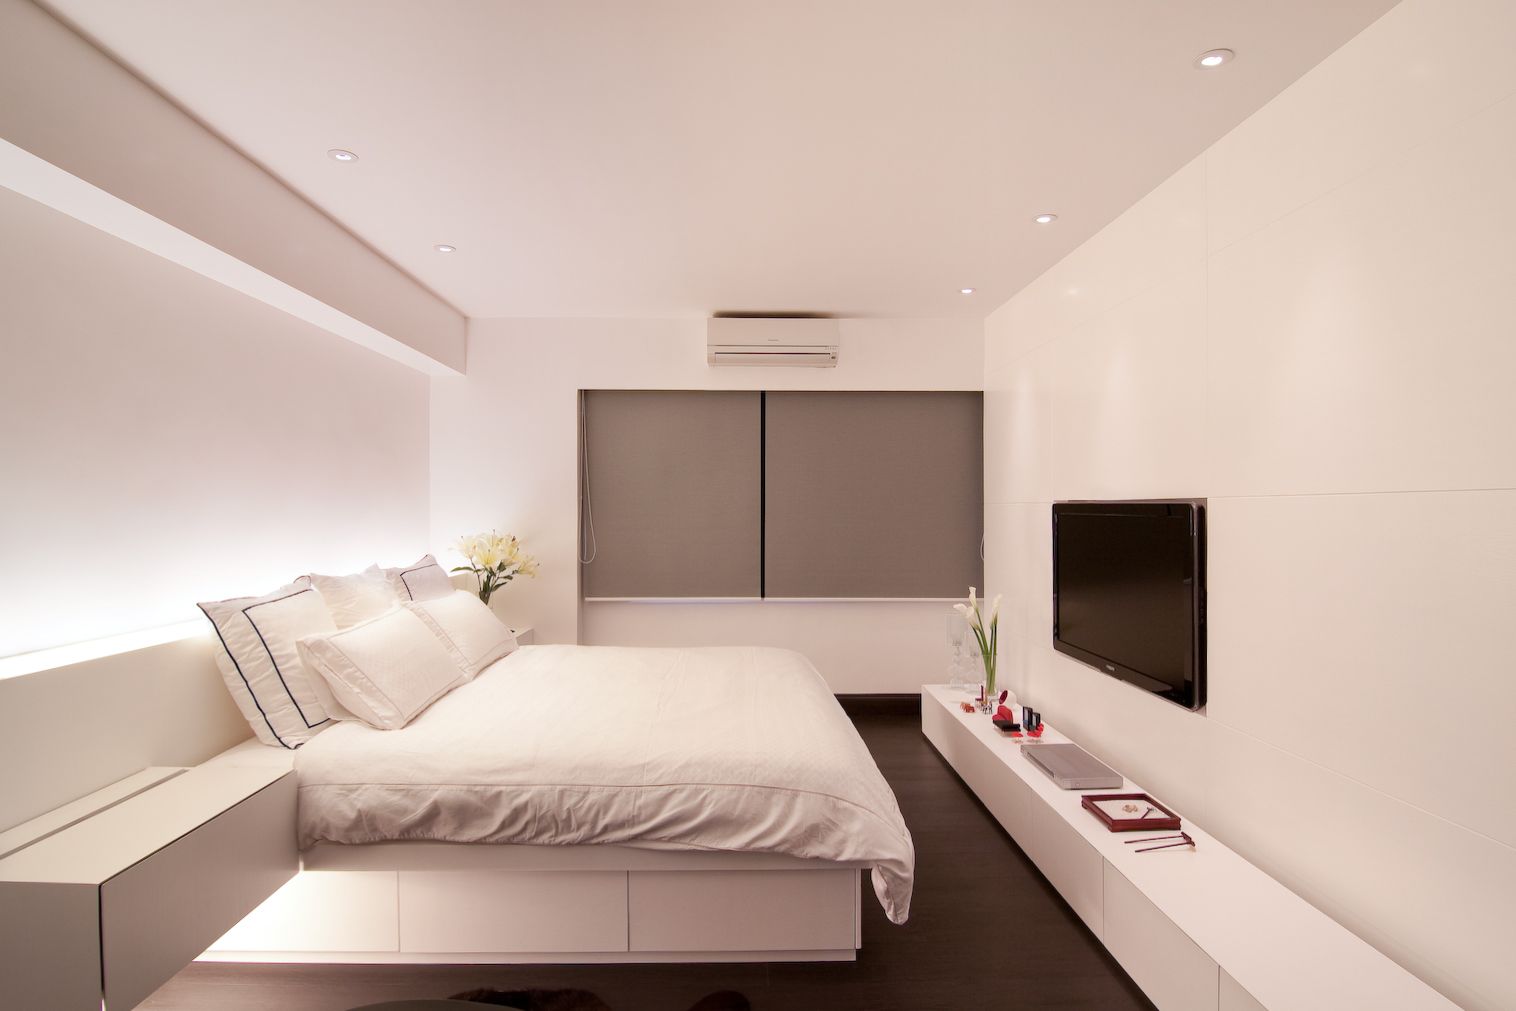 欧式 北欧 简约 现代 温馨 西安 装修 设计 卧室图片来自翼森设计在一屋一风情的分享